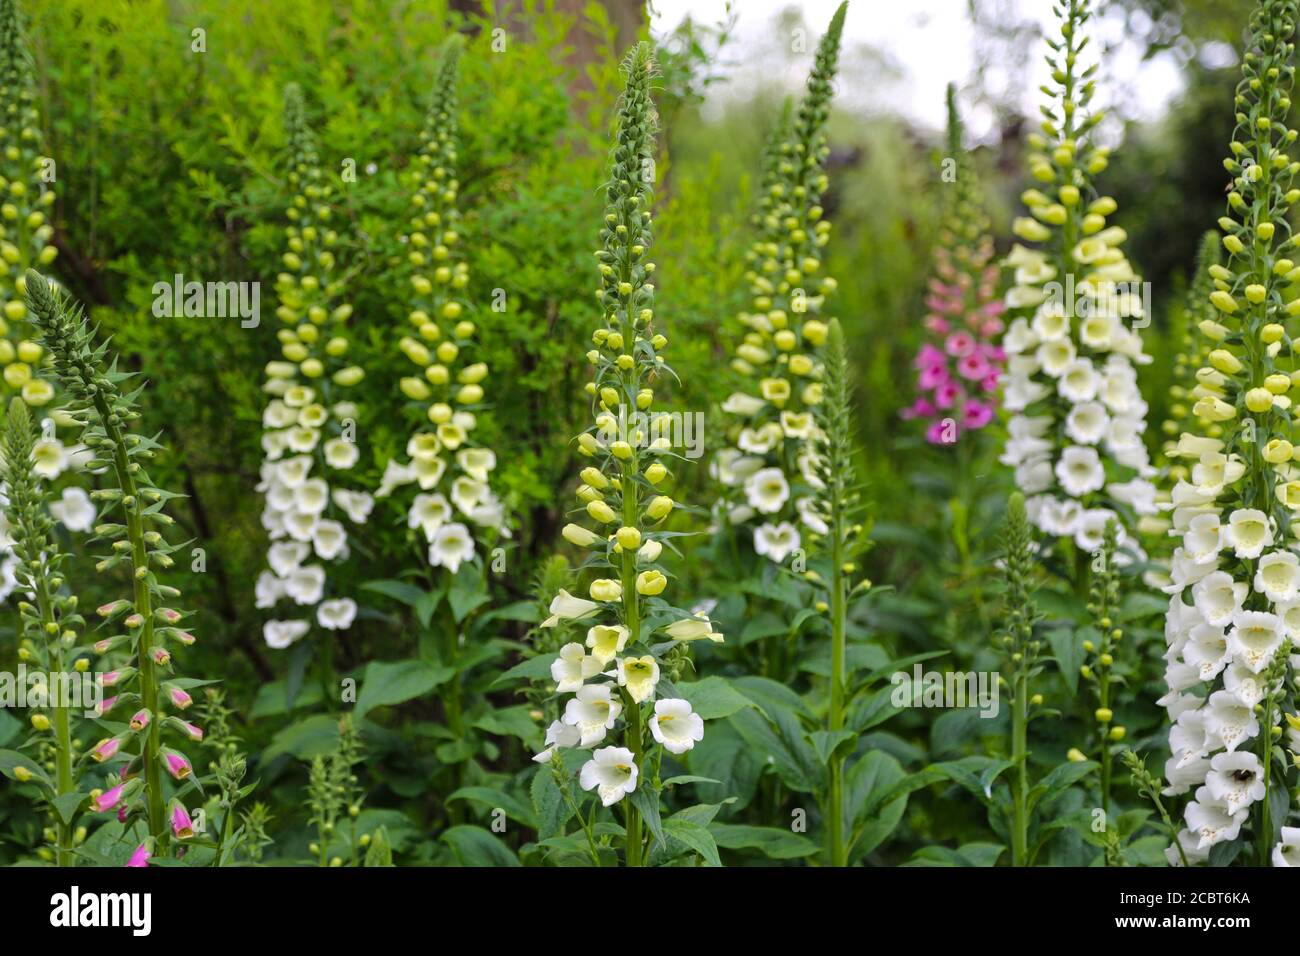 Flowerbed with Viburnum plicatum Summer Snowflake and Digitalis purpurea Alba Foxglove Stock Photo